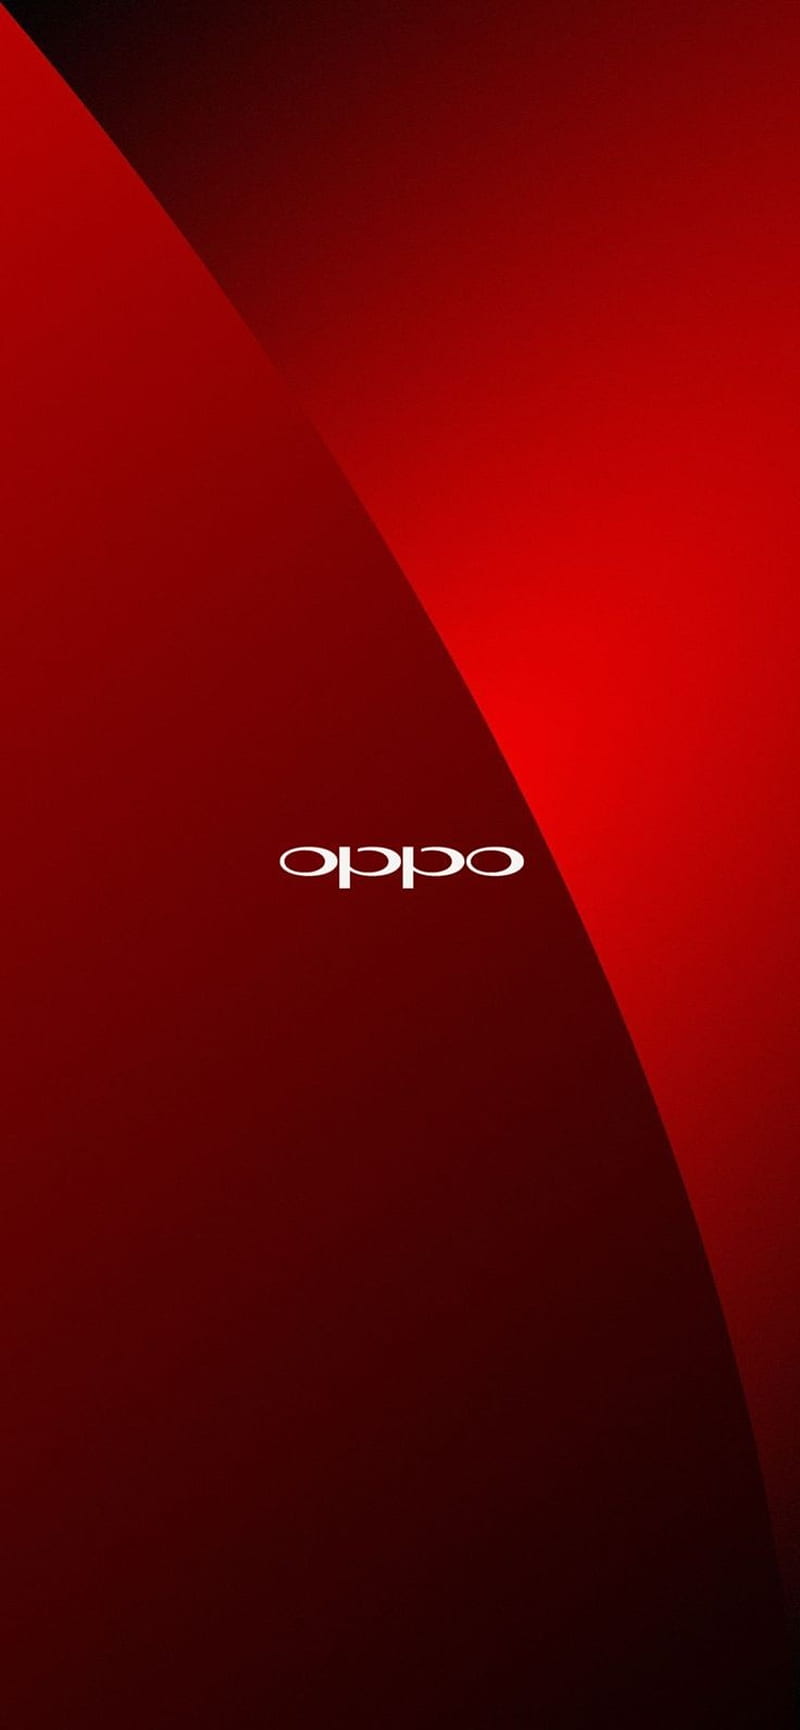 Hãy tải ngay bộ ảnh nền HD của Oppo để khám phá độ sắc nét và sự tuyệt đẹp của từng chi tiết trên màn hình điện thoại của bạn. Với độ phân giải cao và thiết kế đẹp mắt, những bức ảnh nền này sẽ khiến cho màn hình Oppo của bạn trở nên sống động hơn bao giờ hết.